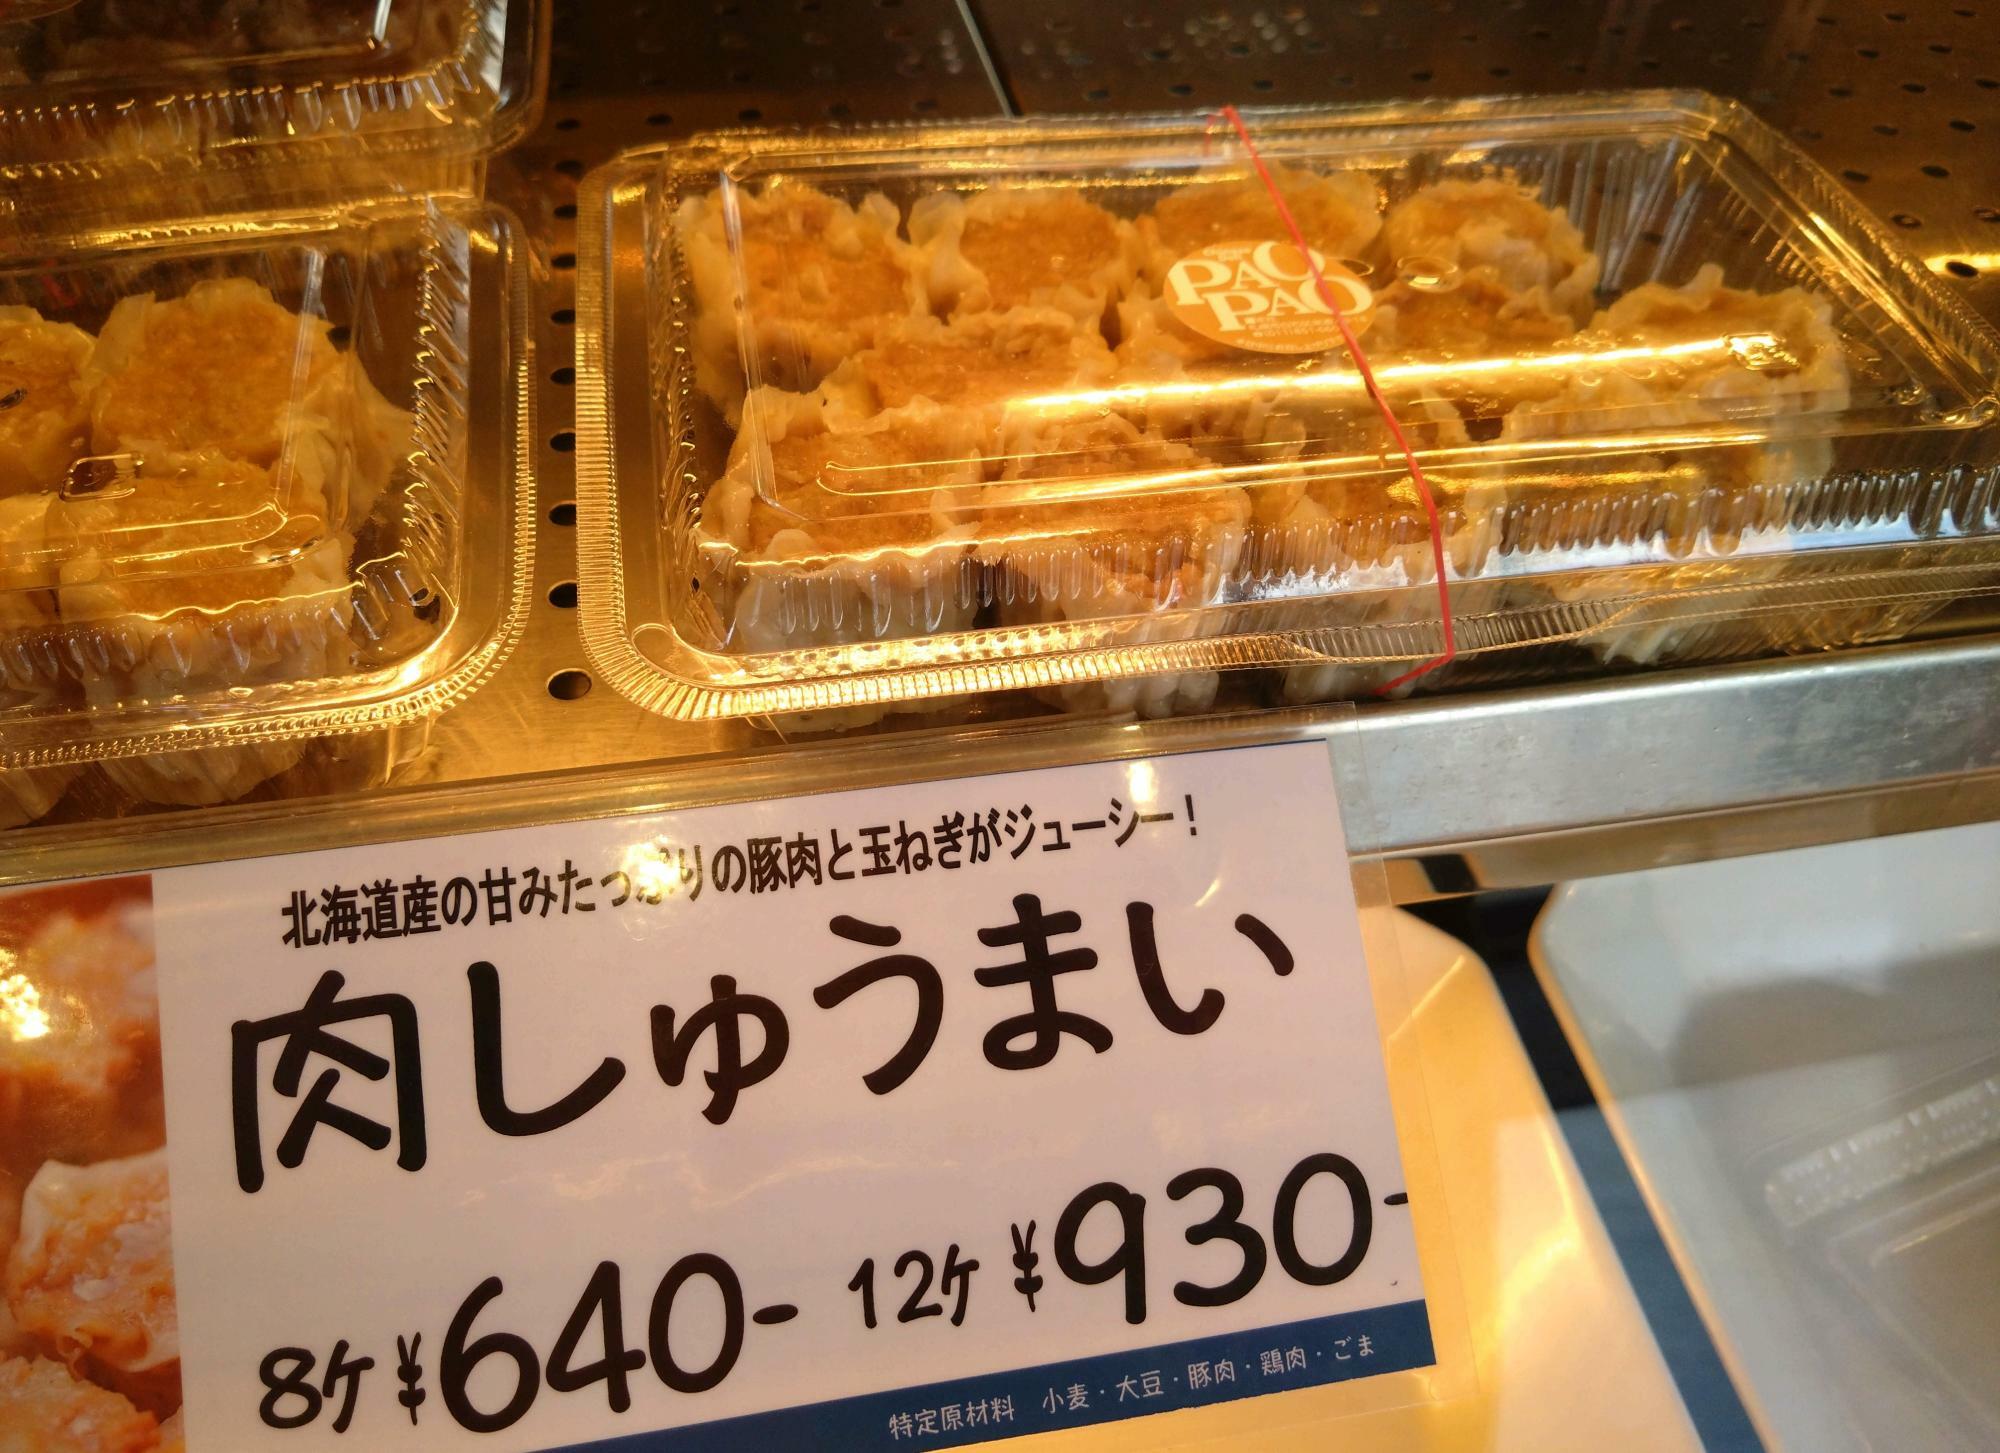 プライスカードにあるとおり、北海道産の豚肉と玉ねぎがジューシーです。人気のメニュー。